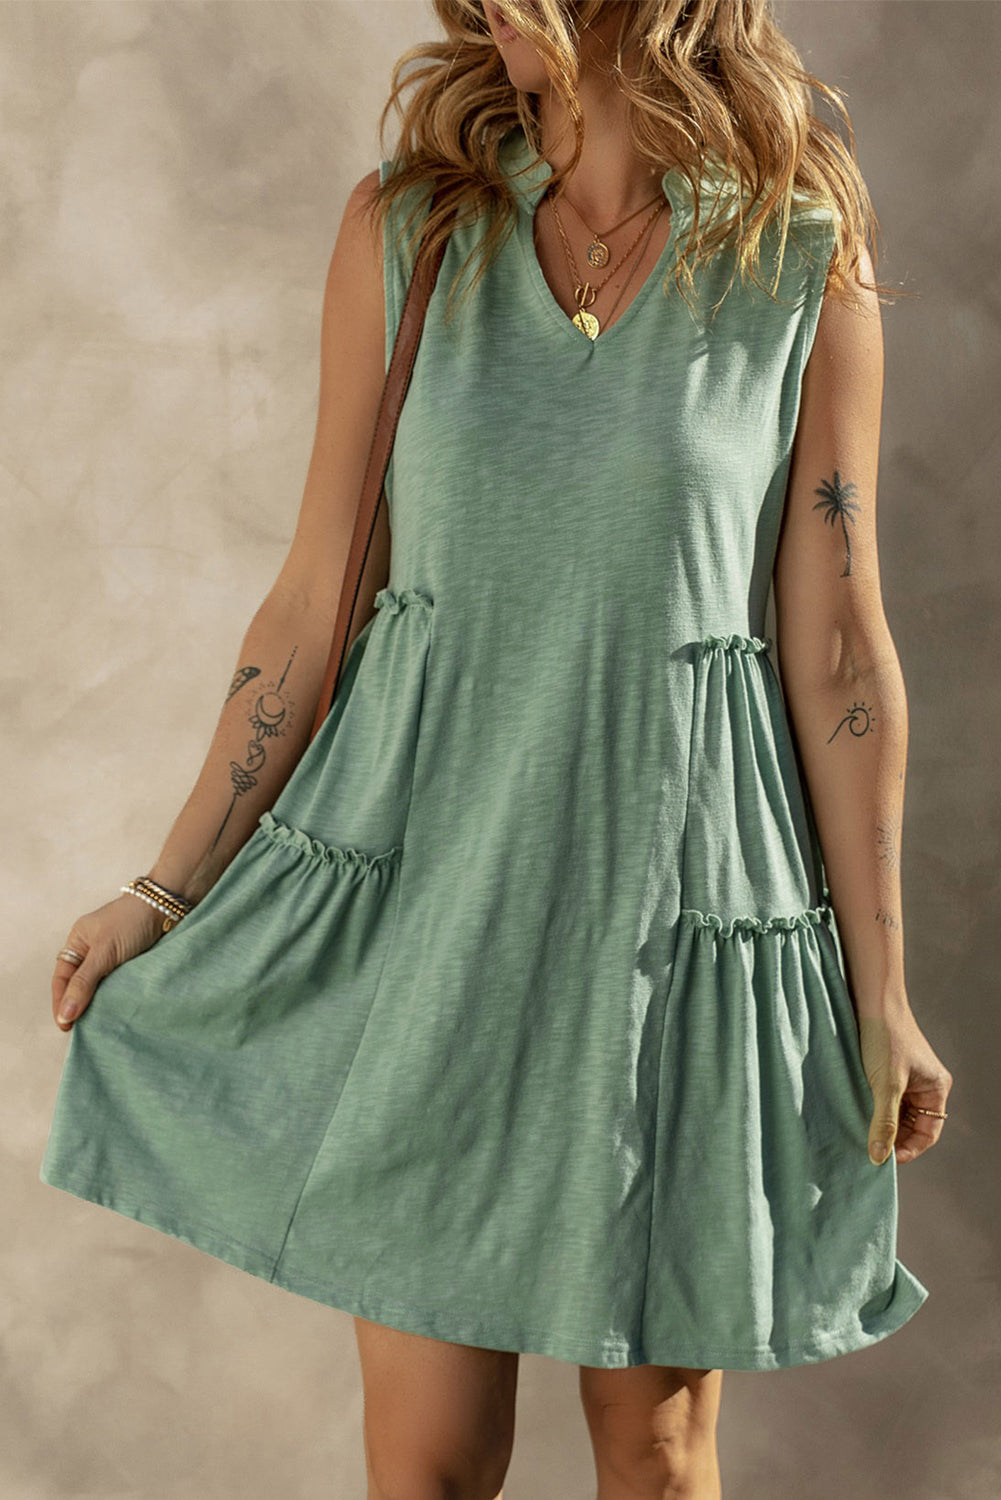 Gestuftes, fließendes, ärmelloses Kleid mit geteiltem V-Ausschnitt von Moonlight Jade